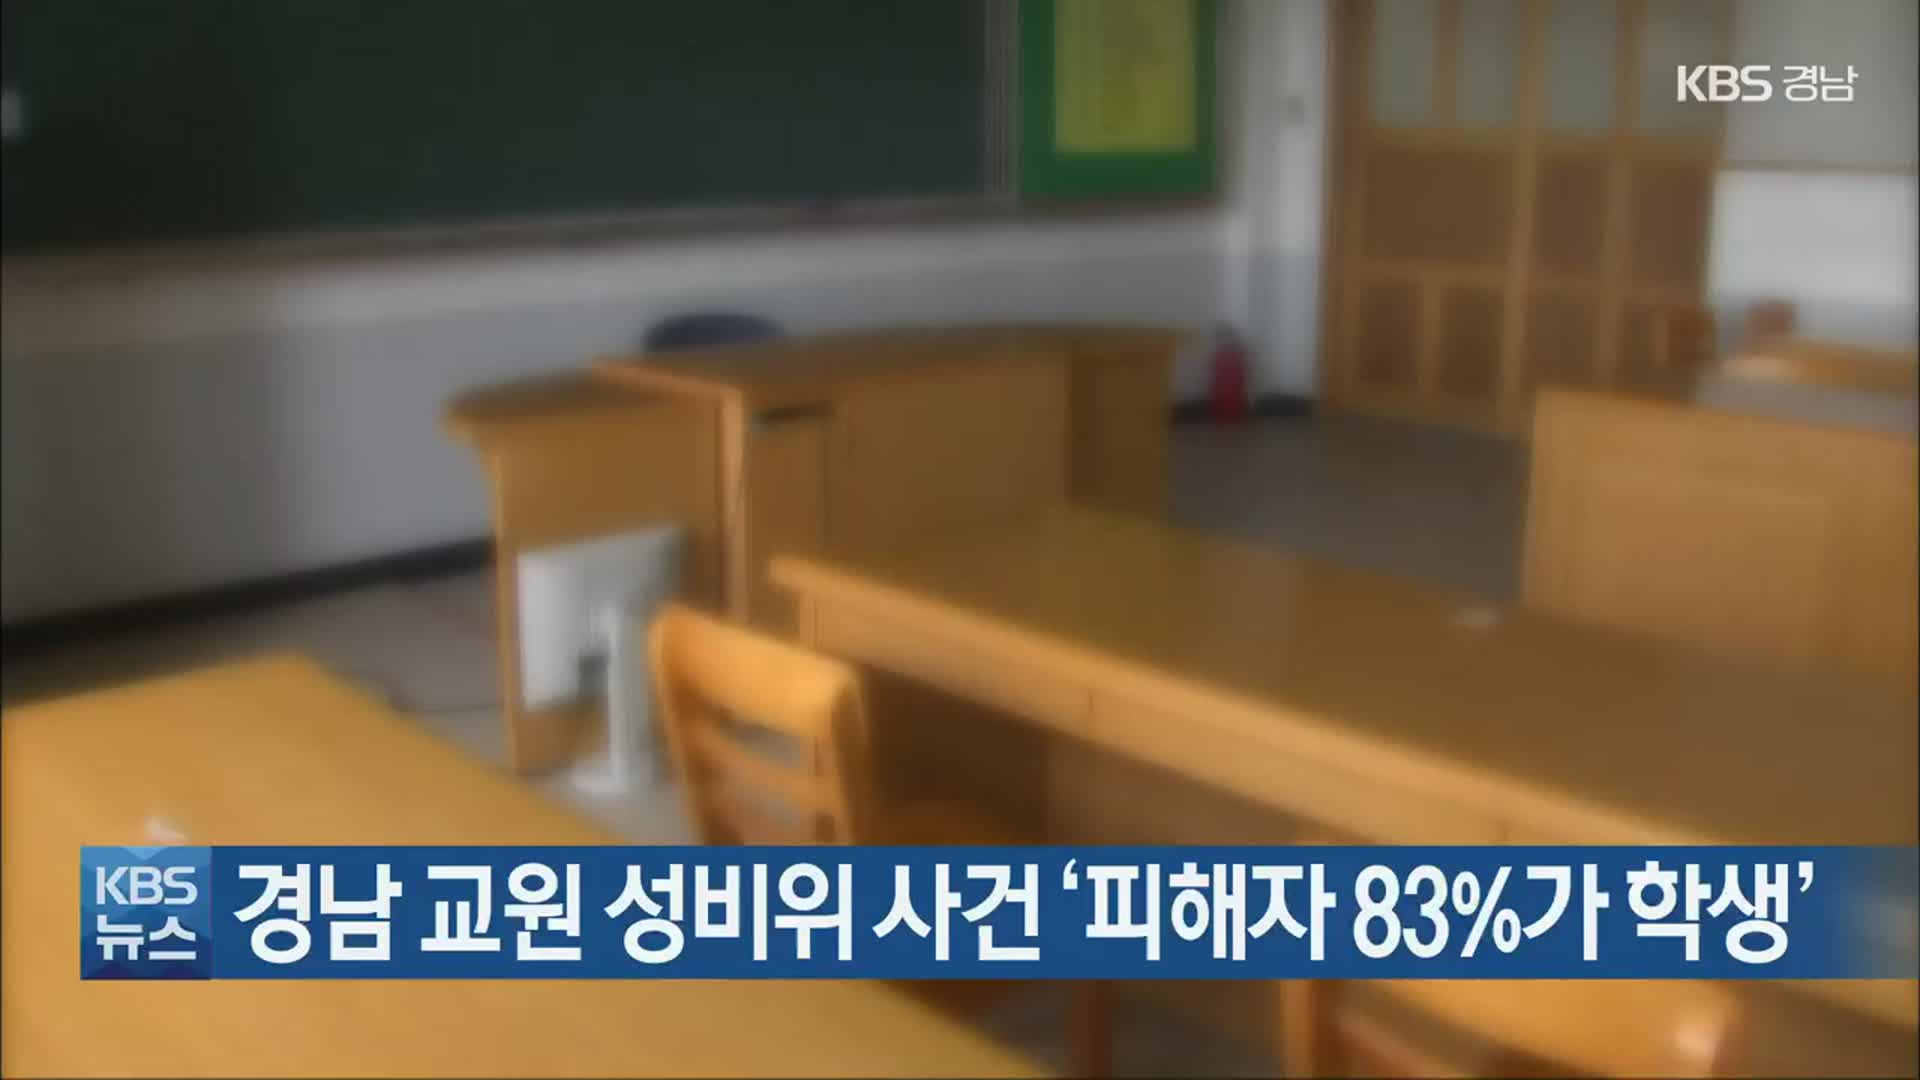 경남 교원 성비위 사건 ‘피해자 83%가 학생’